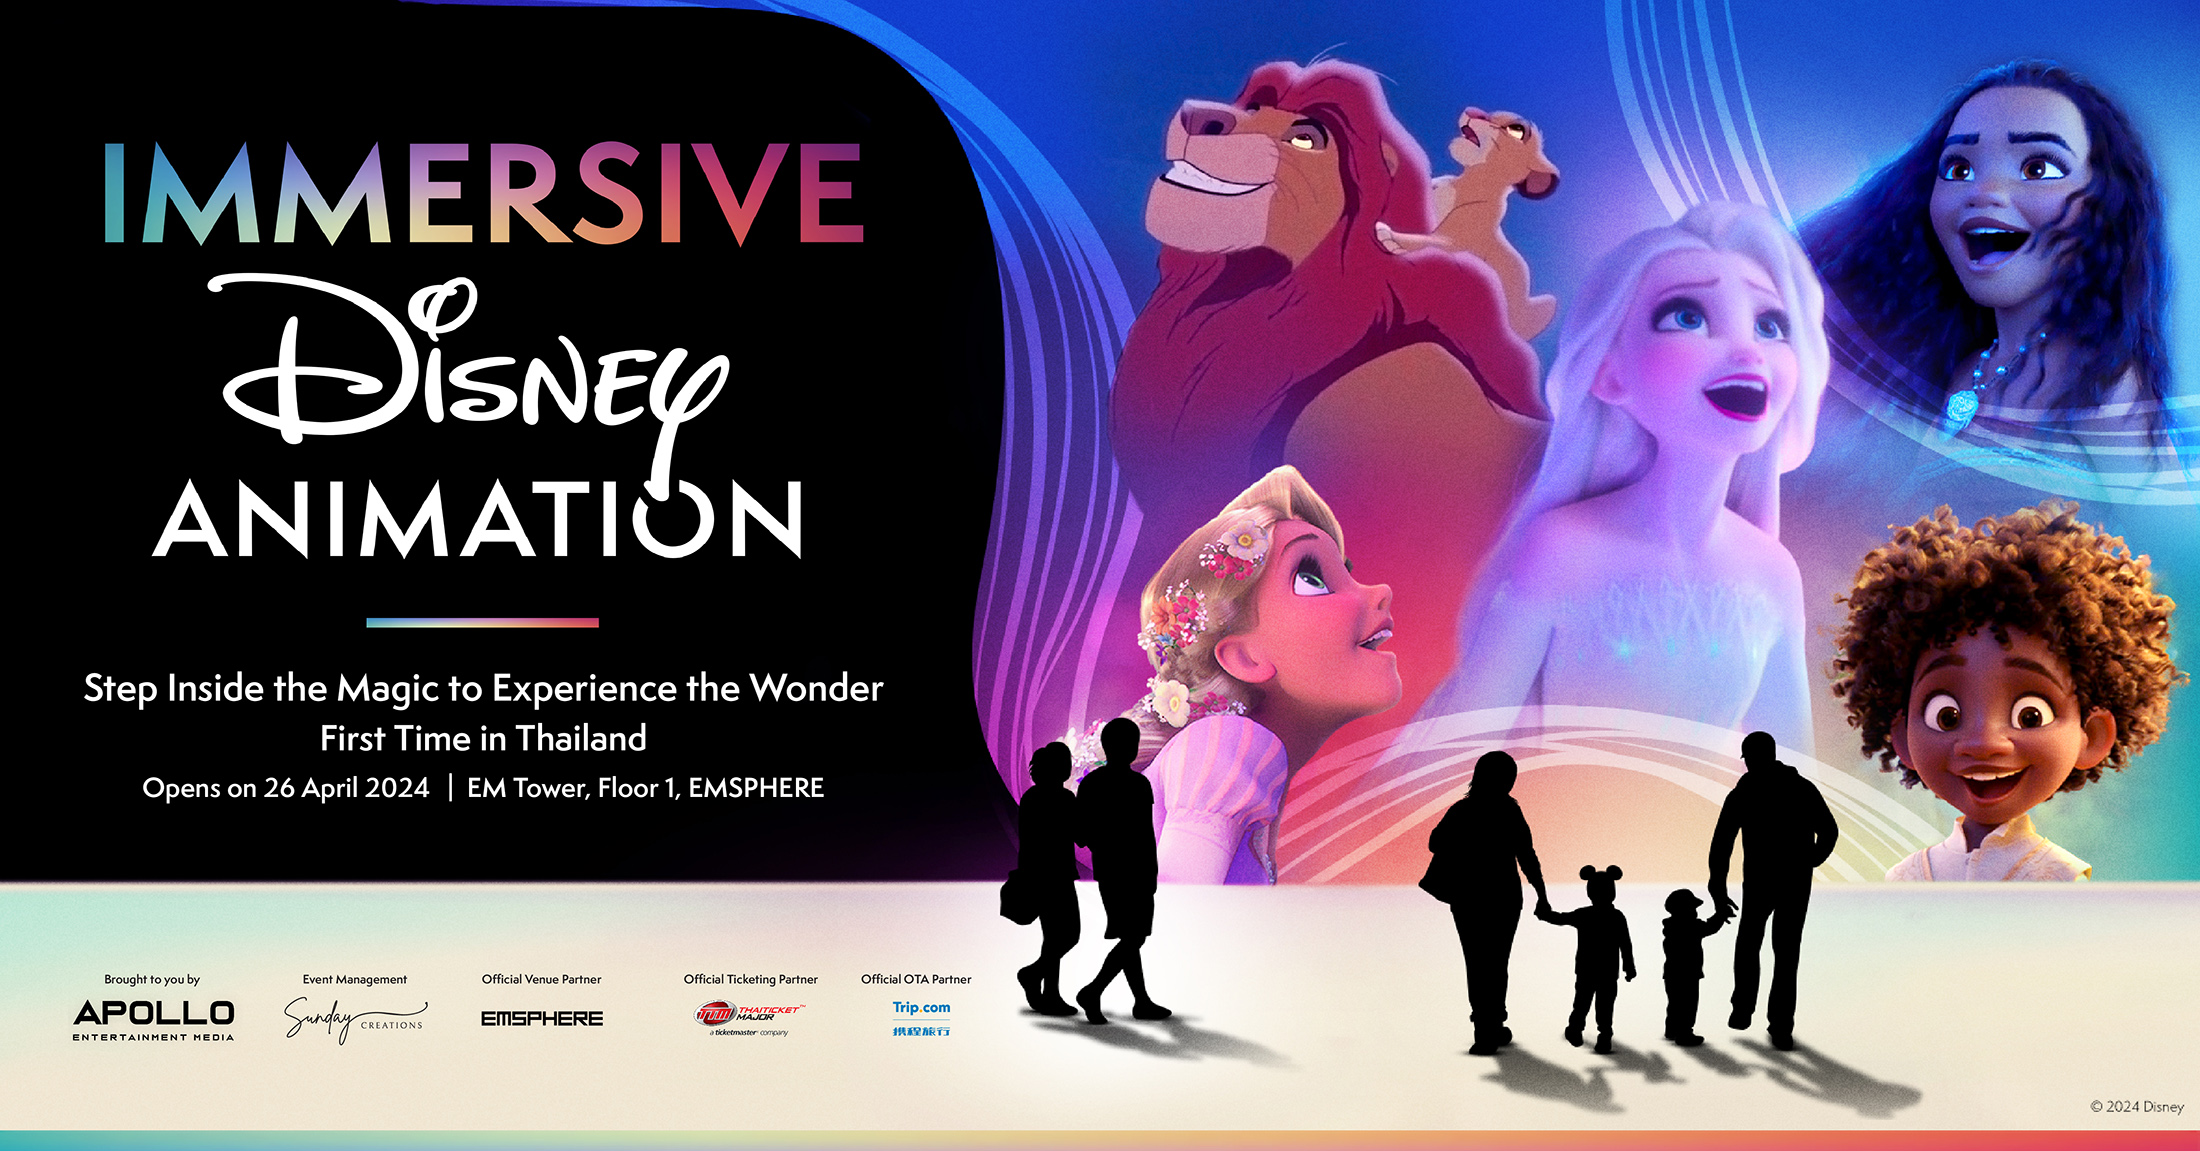 ร่วมเฉลิมฉลองครบรอบ 100 ปีกับเวทมนตร์สุดมหัศจรรย์ในโลก Animation Disney กับงานแสดงนิทรรศการ Immersive Disney Animation  ครั้งแรกในประเทศไทย